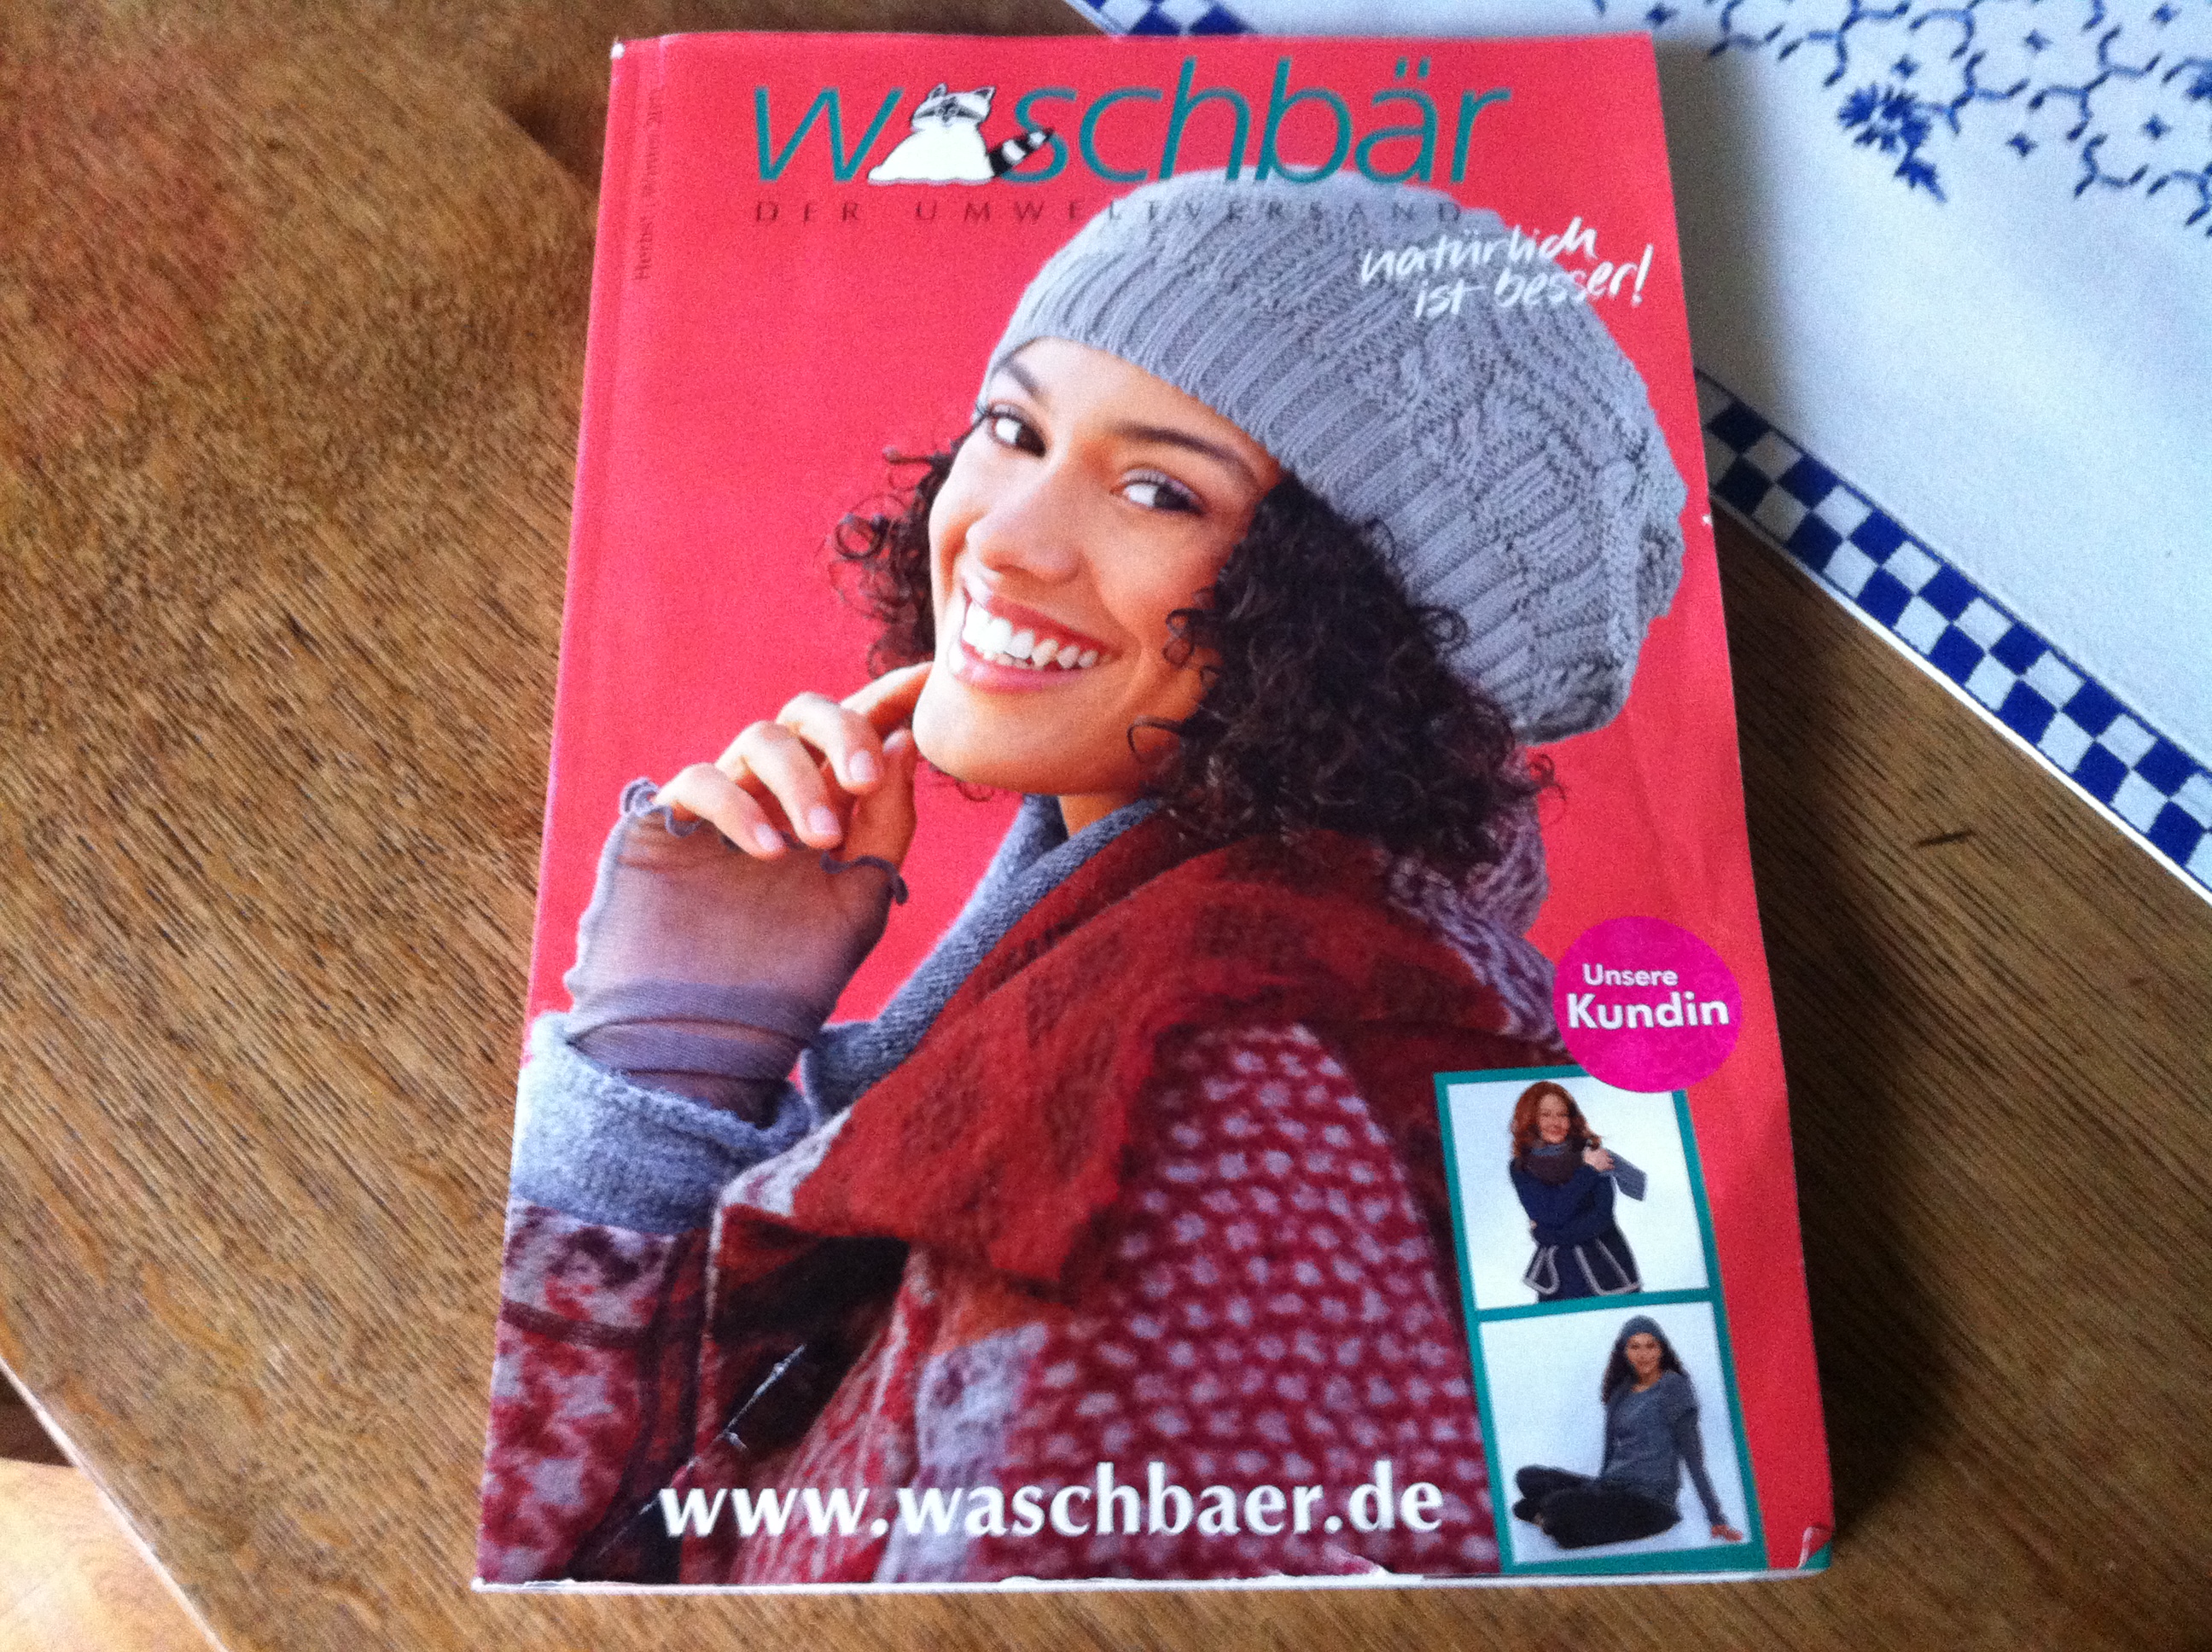 Der aktuelle Katalog von Waschbär - 328 Seiten kann man da durchblättern!